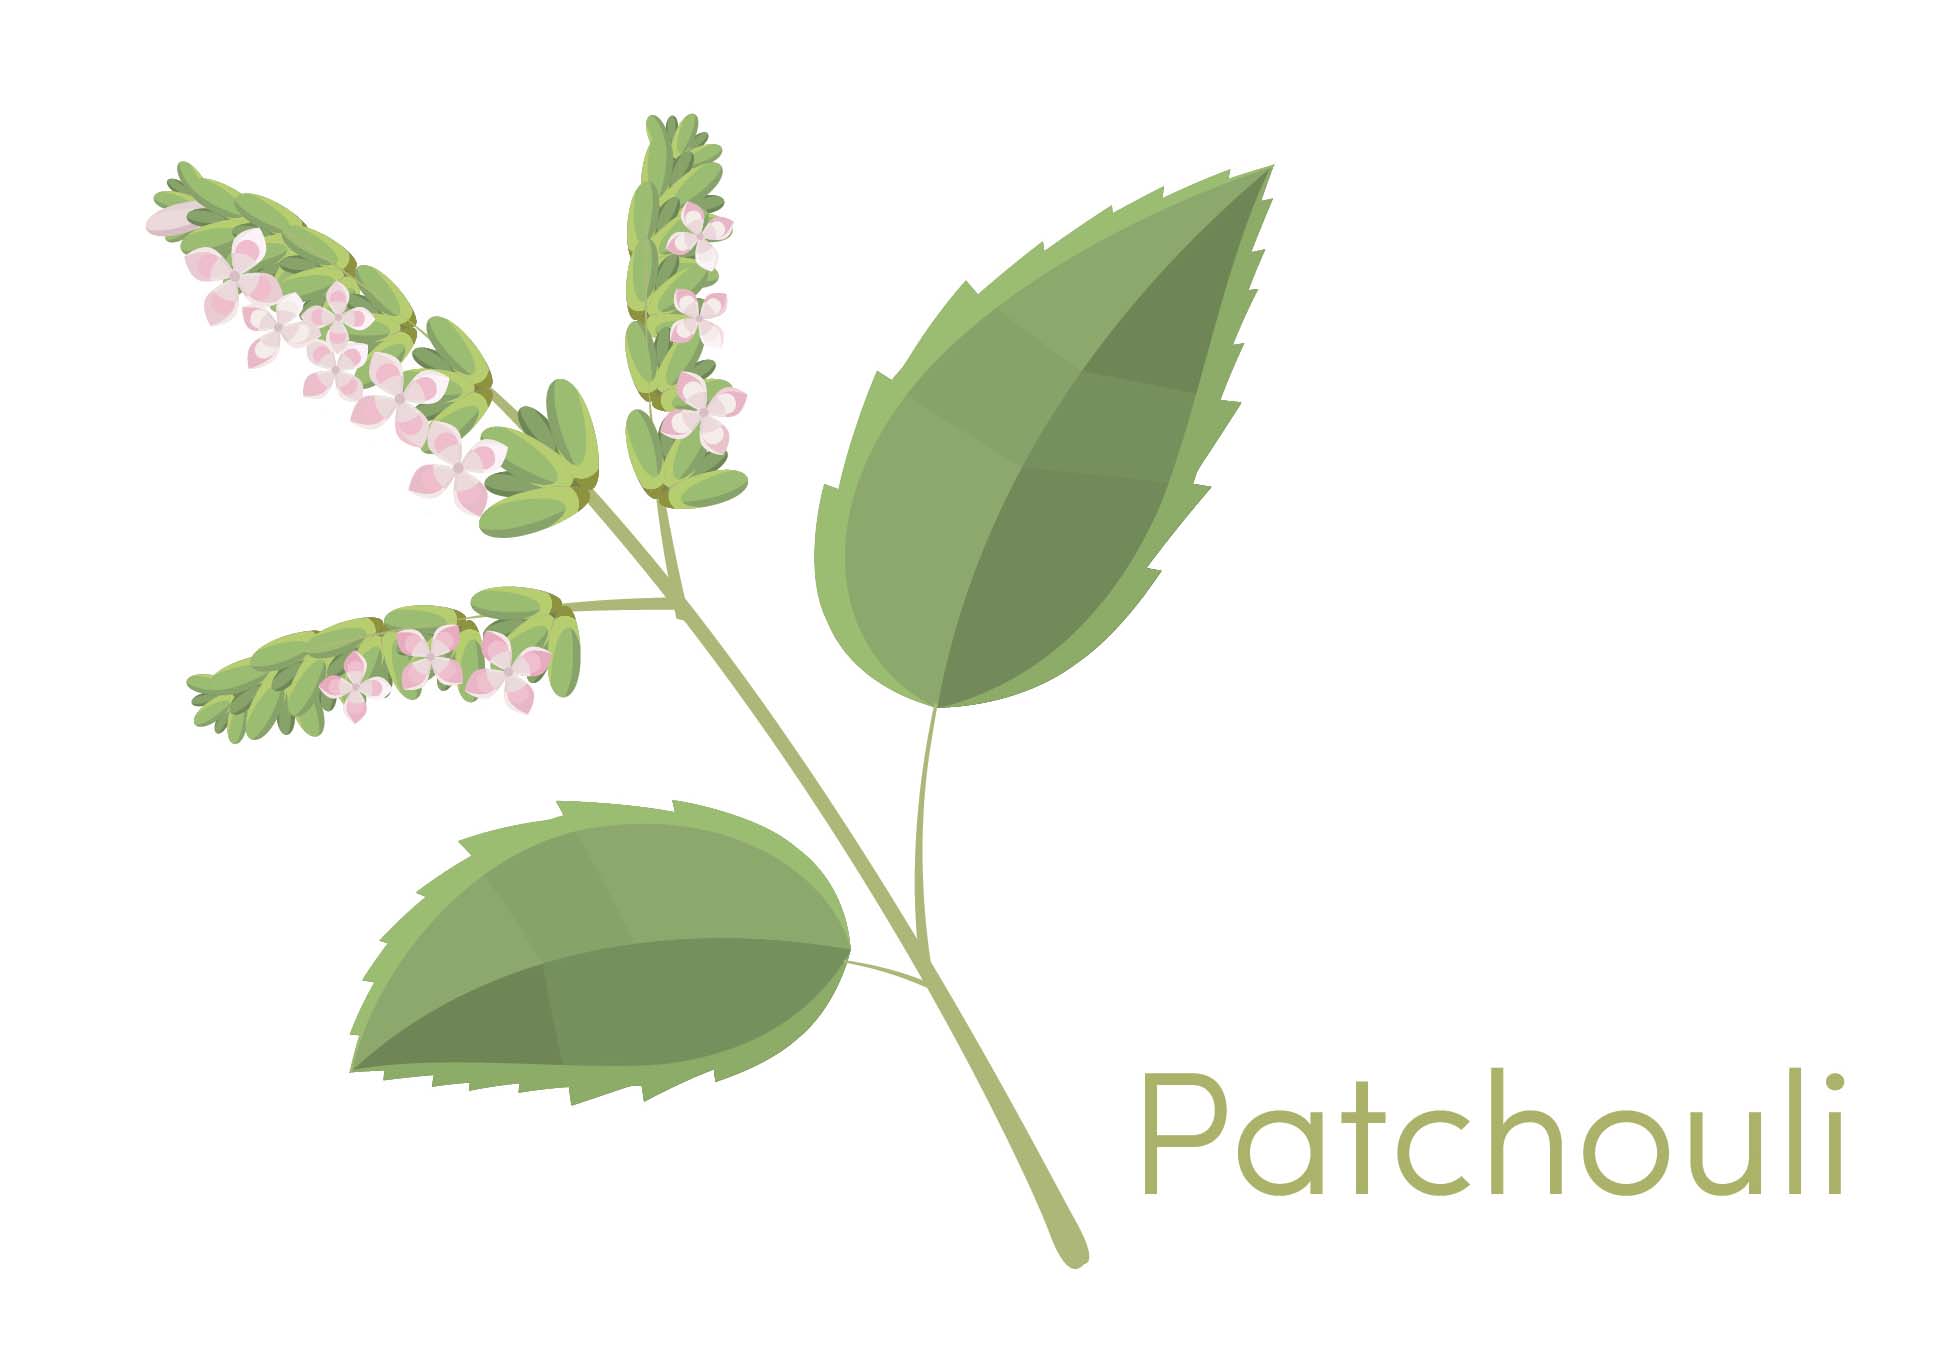 illustration of the patchouli leaf